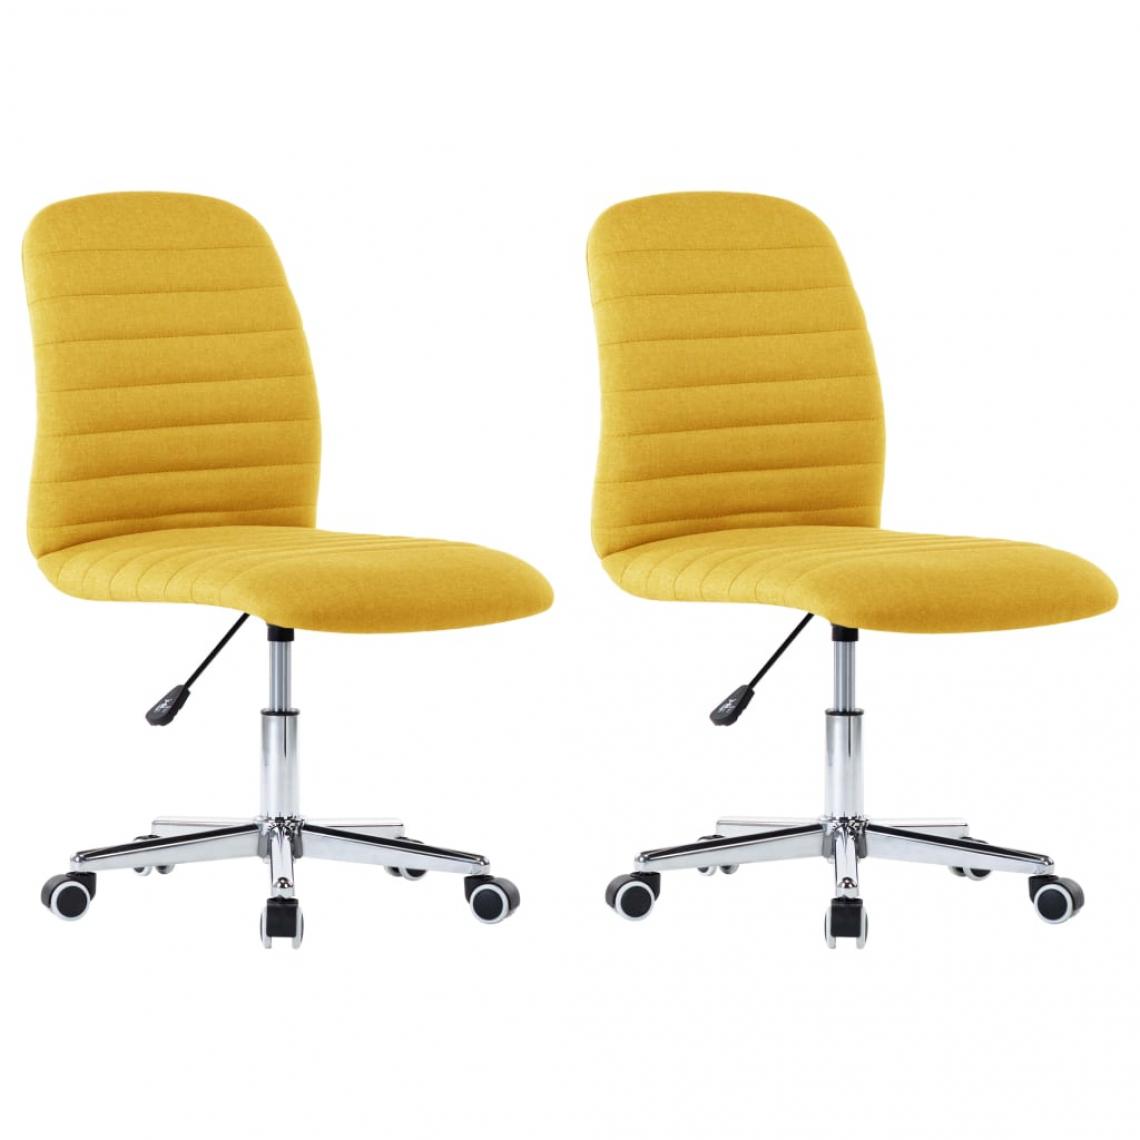 Decoshop26 - Lot de 2 chaises de salle à manger cuisine design moderne tissu jaune moutarde CDS020625 - Chaises